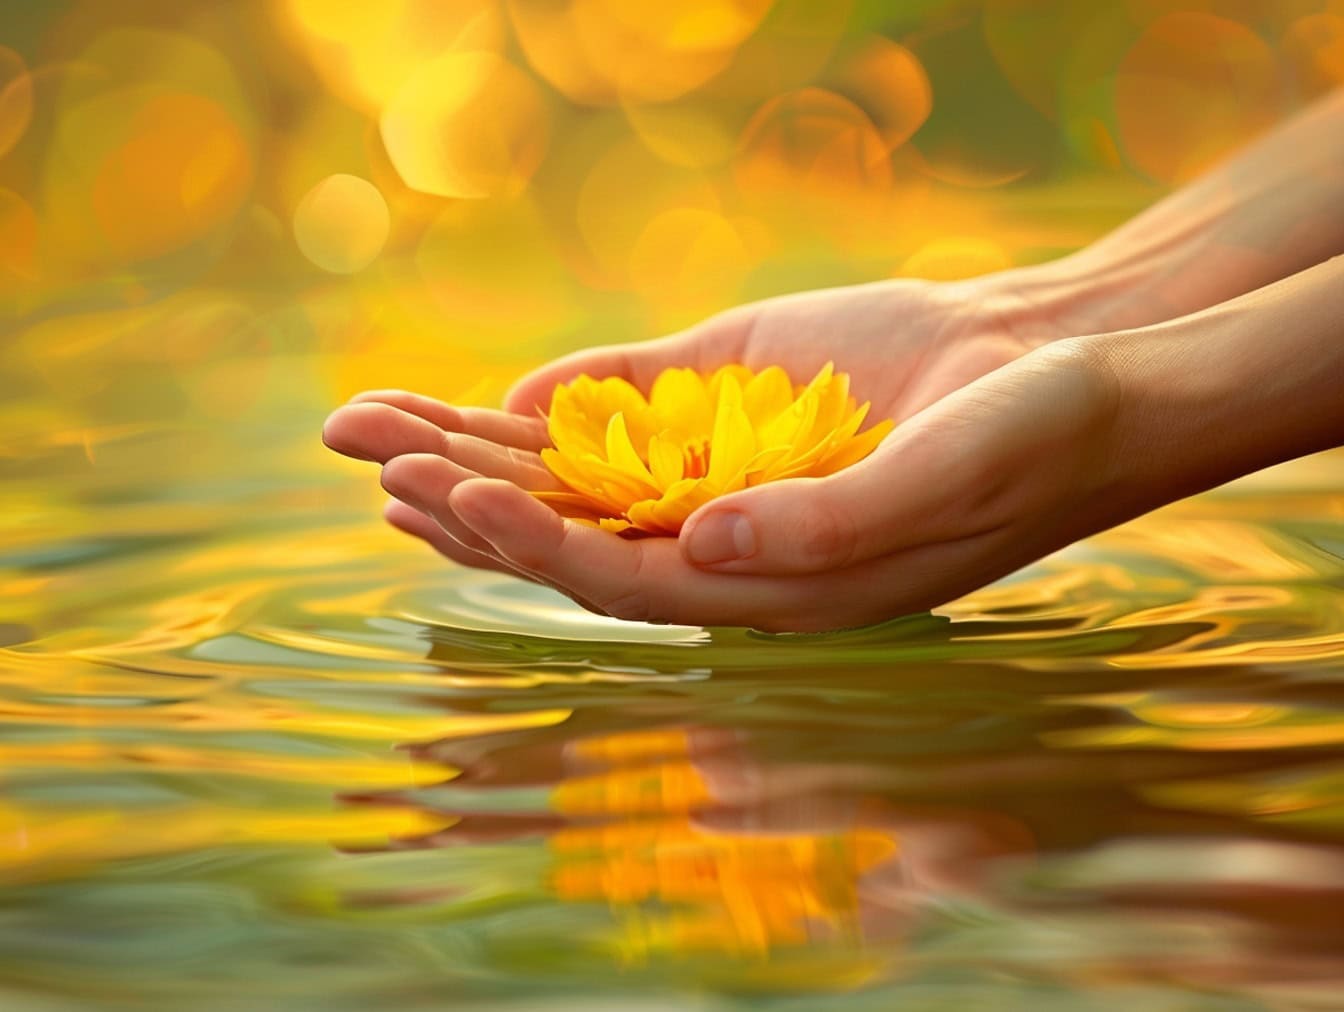 Osoba trzyma w rękach żółty kwiat lotosu tuż nad wodą, ilustrację spokoju i spokoju